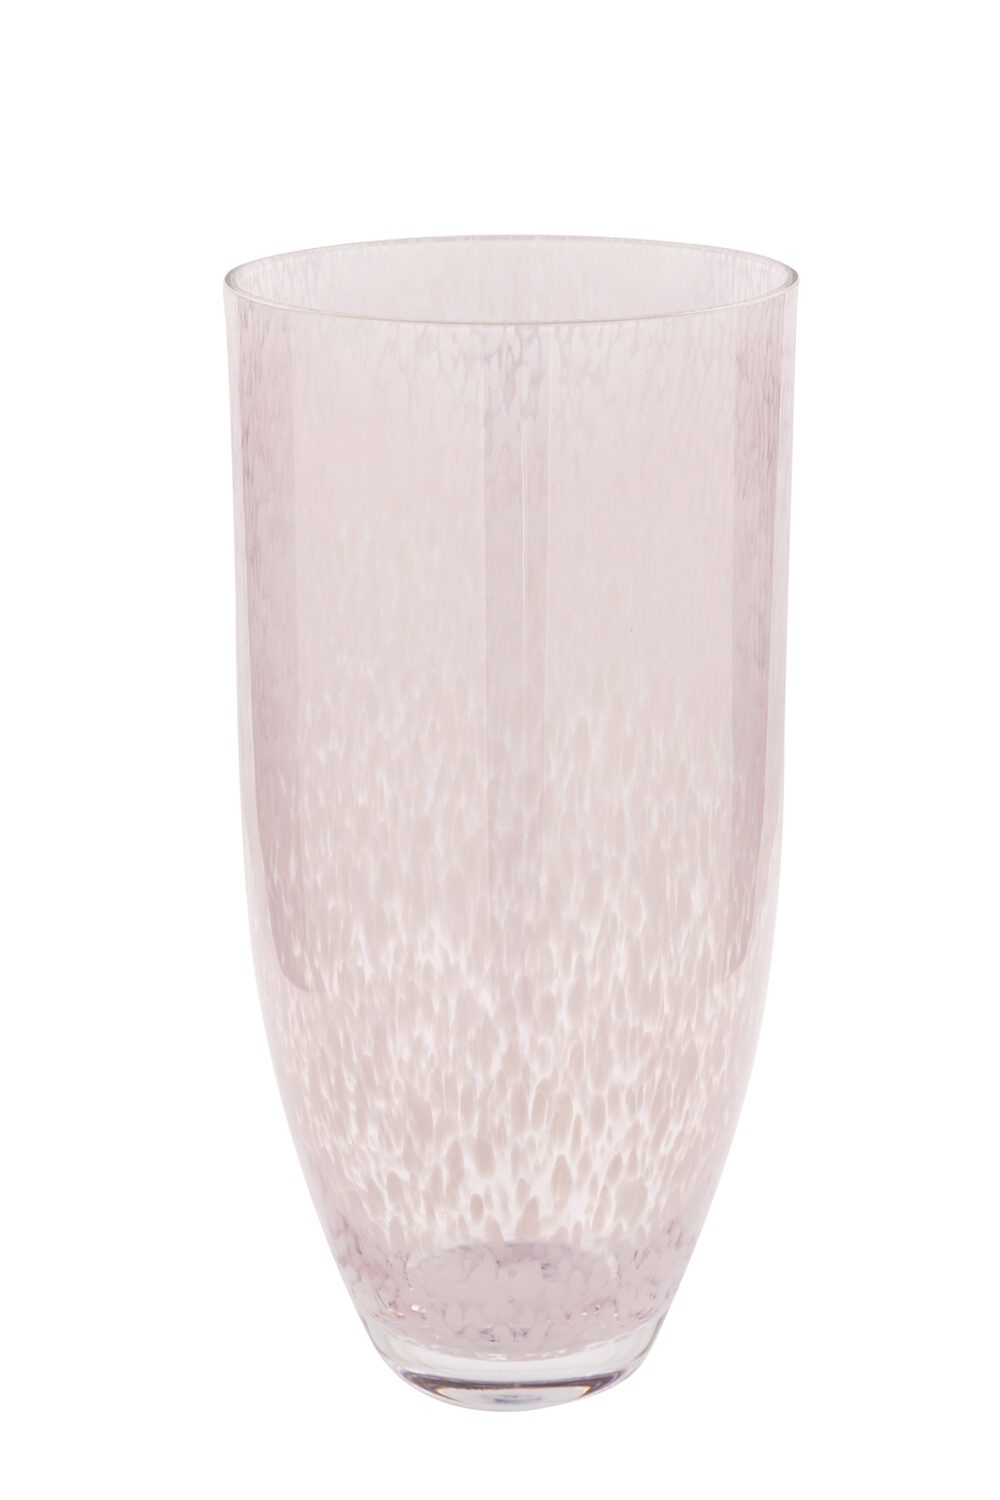 115339 #marke Glasvase Vase Glas Dekovase Tischvase Rumia rose, weiß